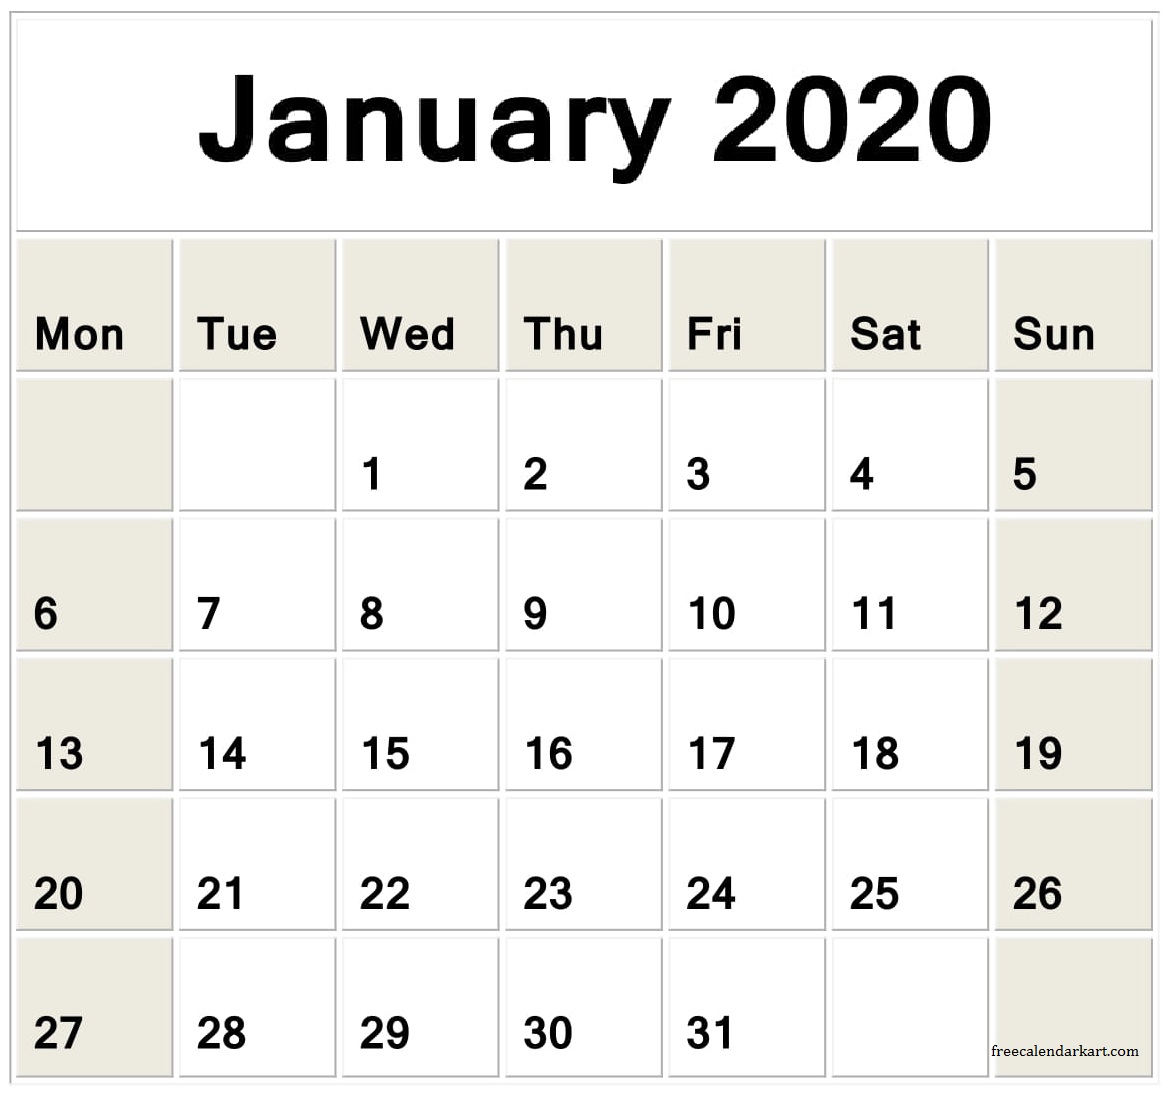  Jan 2020 Calendar